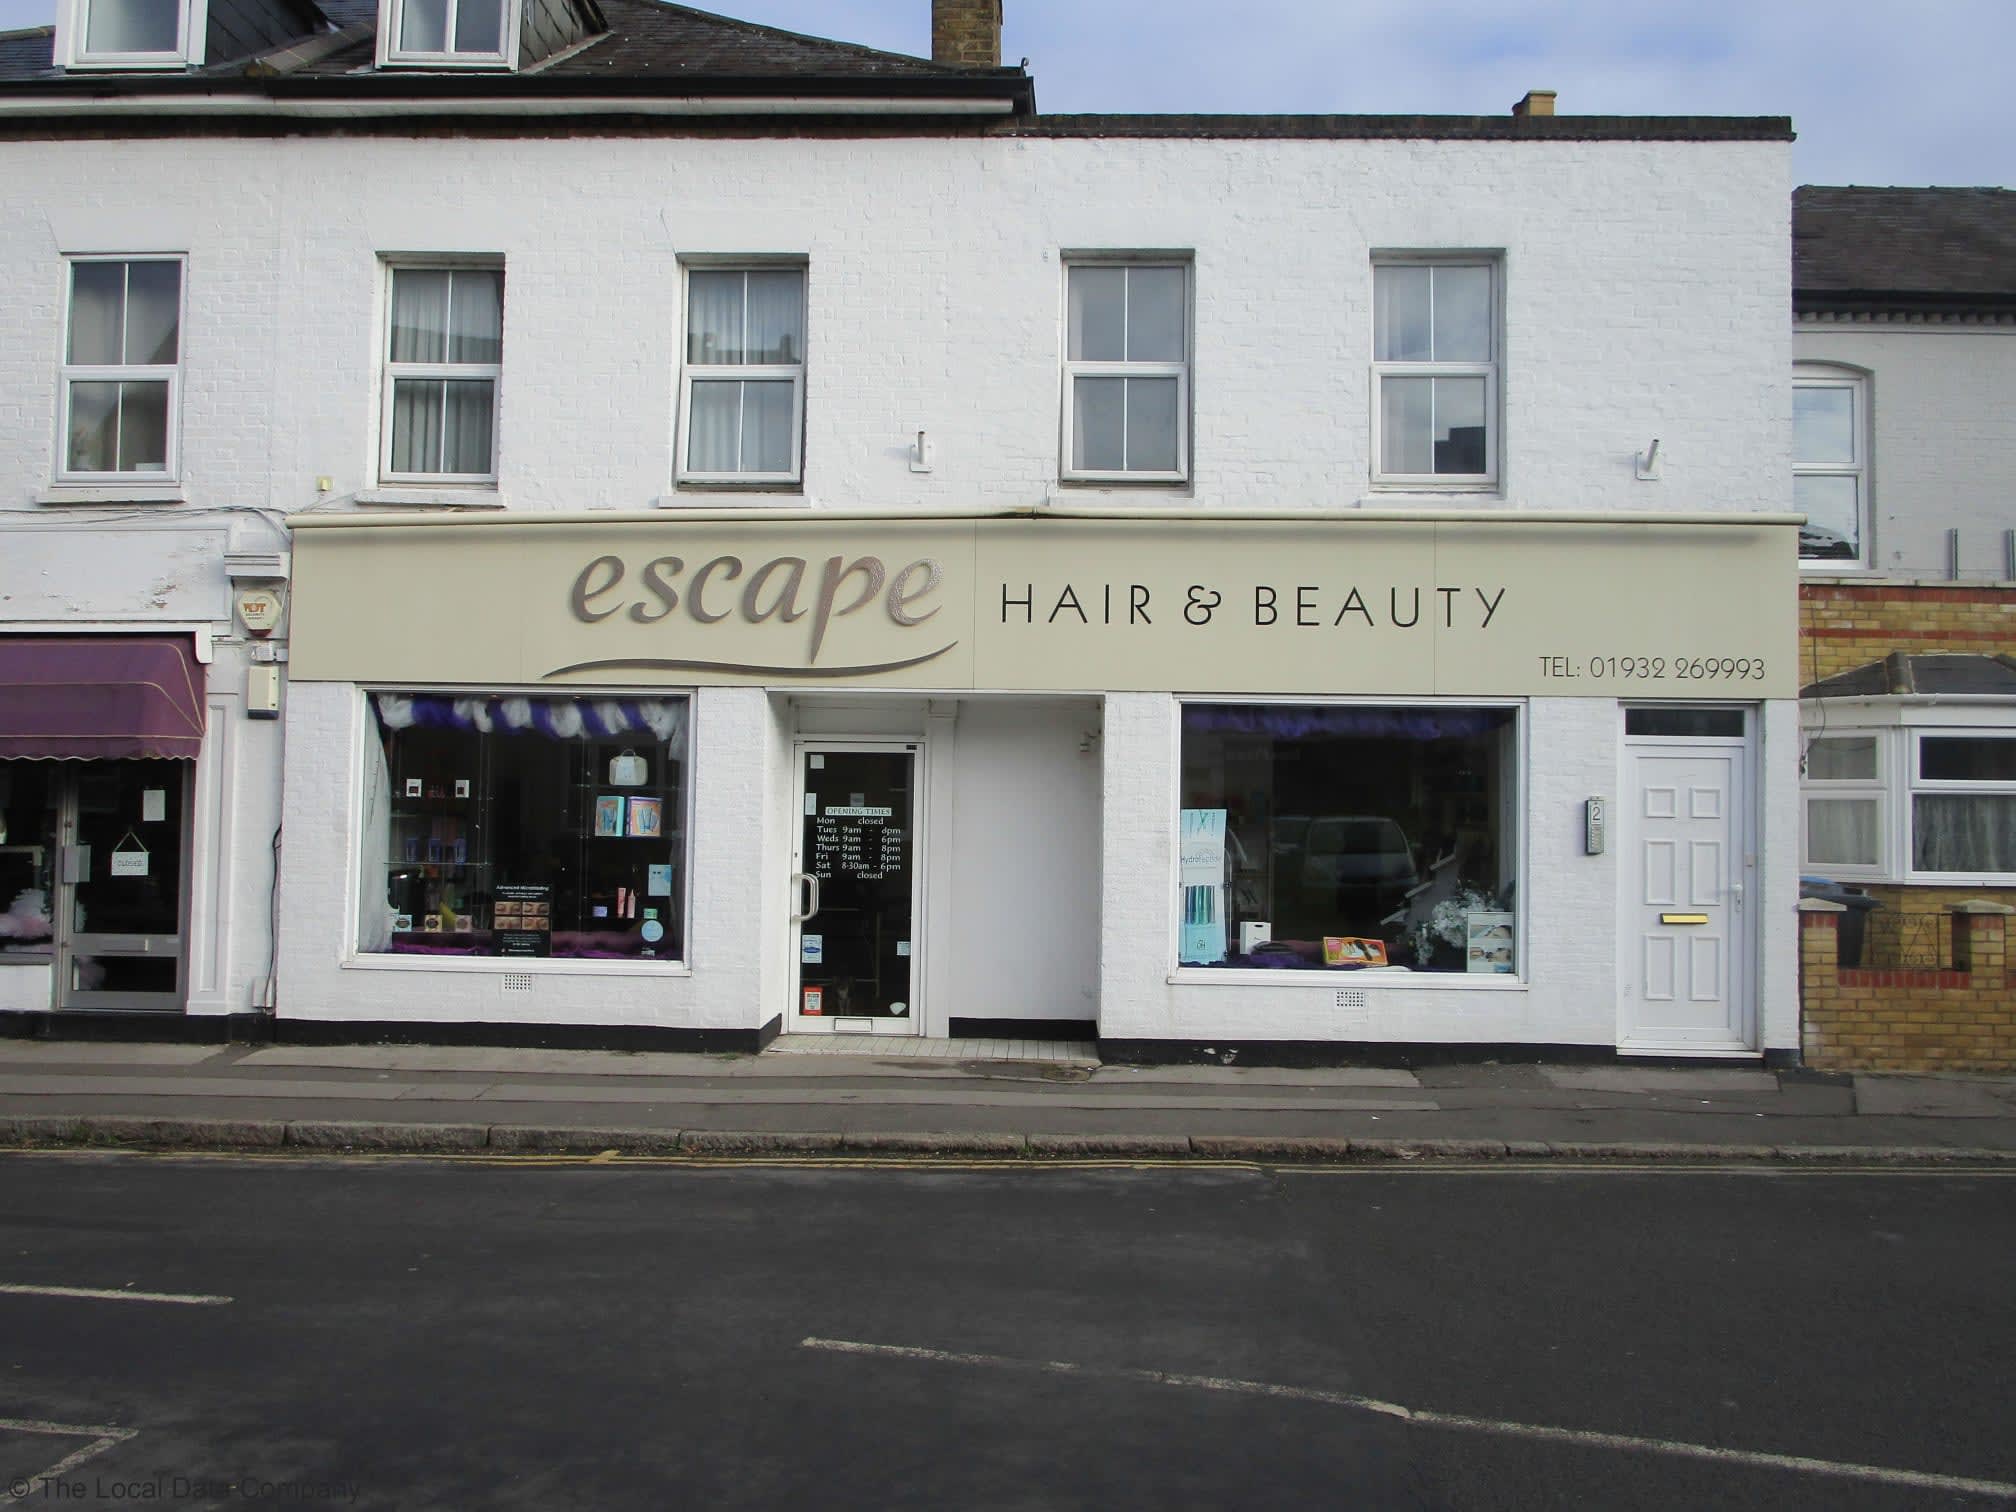 Images Escape Hair & Beauty